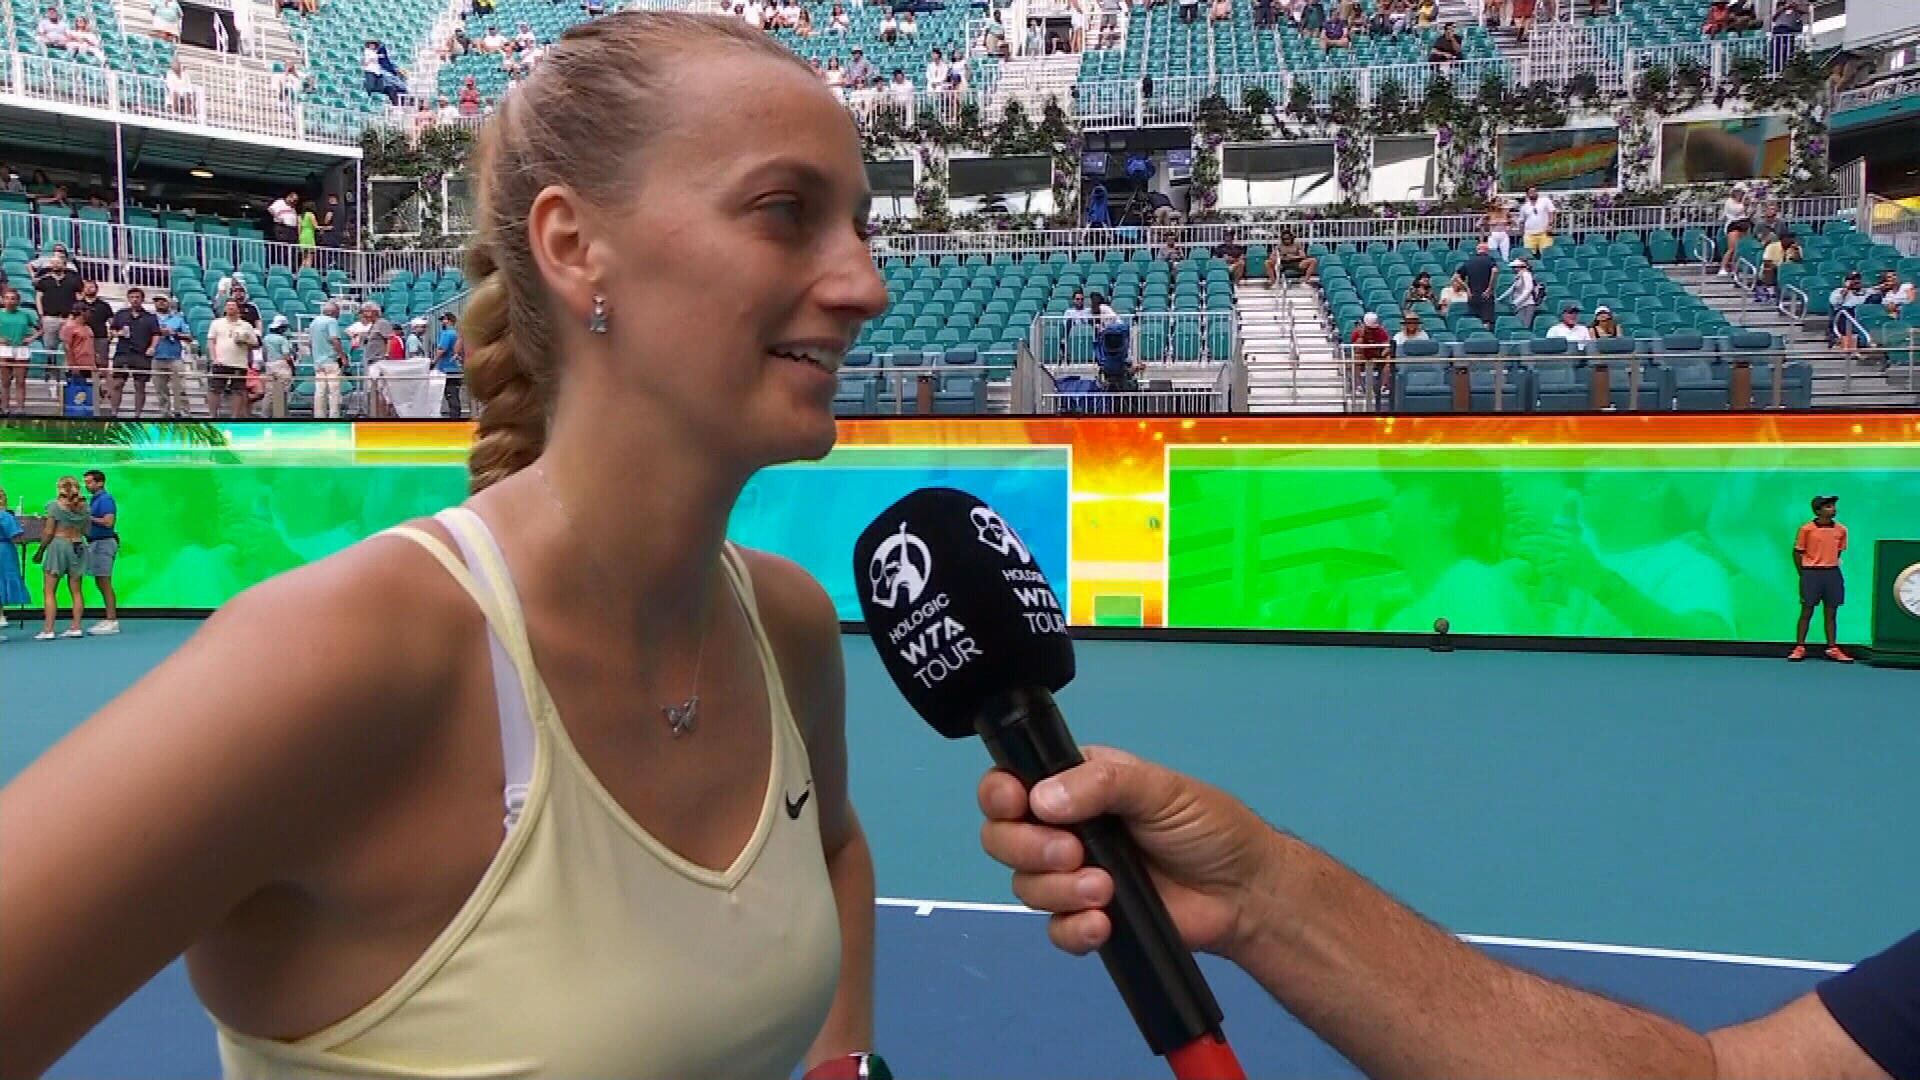 Reacția Petrei Kvitova după ce a eliminat-o pe Sorana Cîrstea în semifinalele WTA Miami: ”Nu mi-am imaginat!”